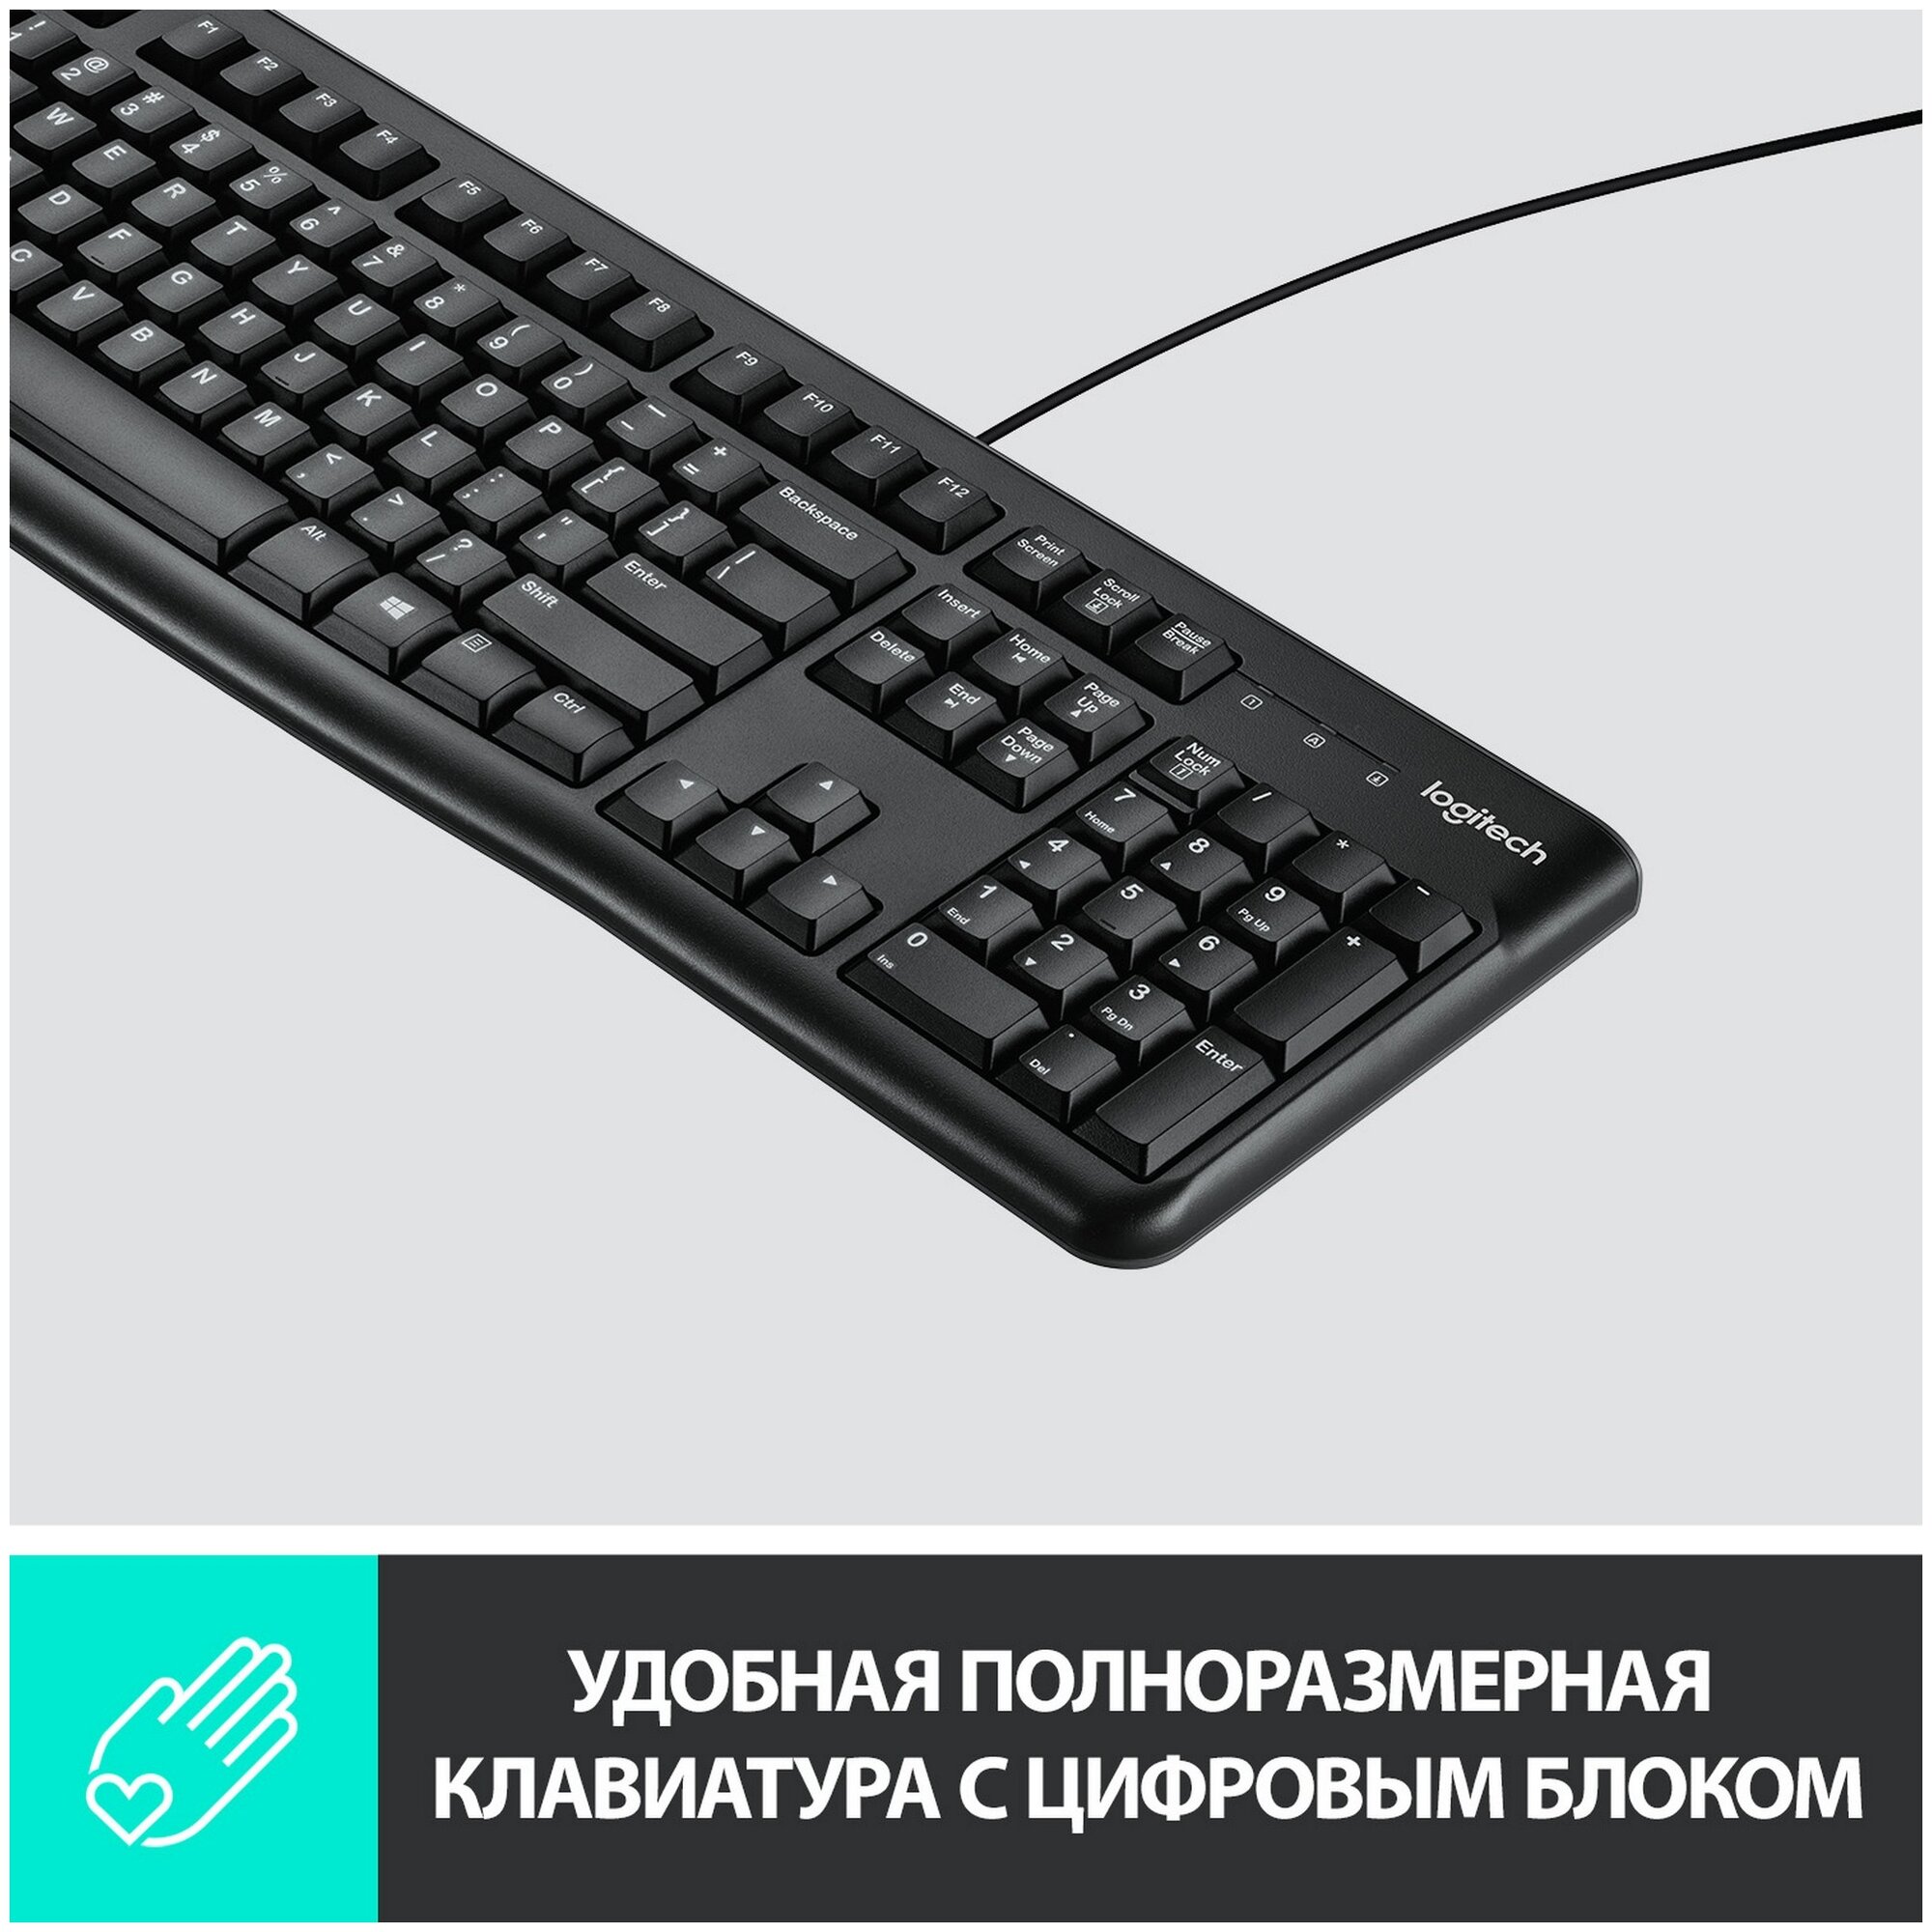 Клавиатура Logitech K120 for Business черный — купить в интернет-магазине  по низкой цене на Яндекс Маркете